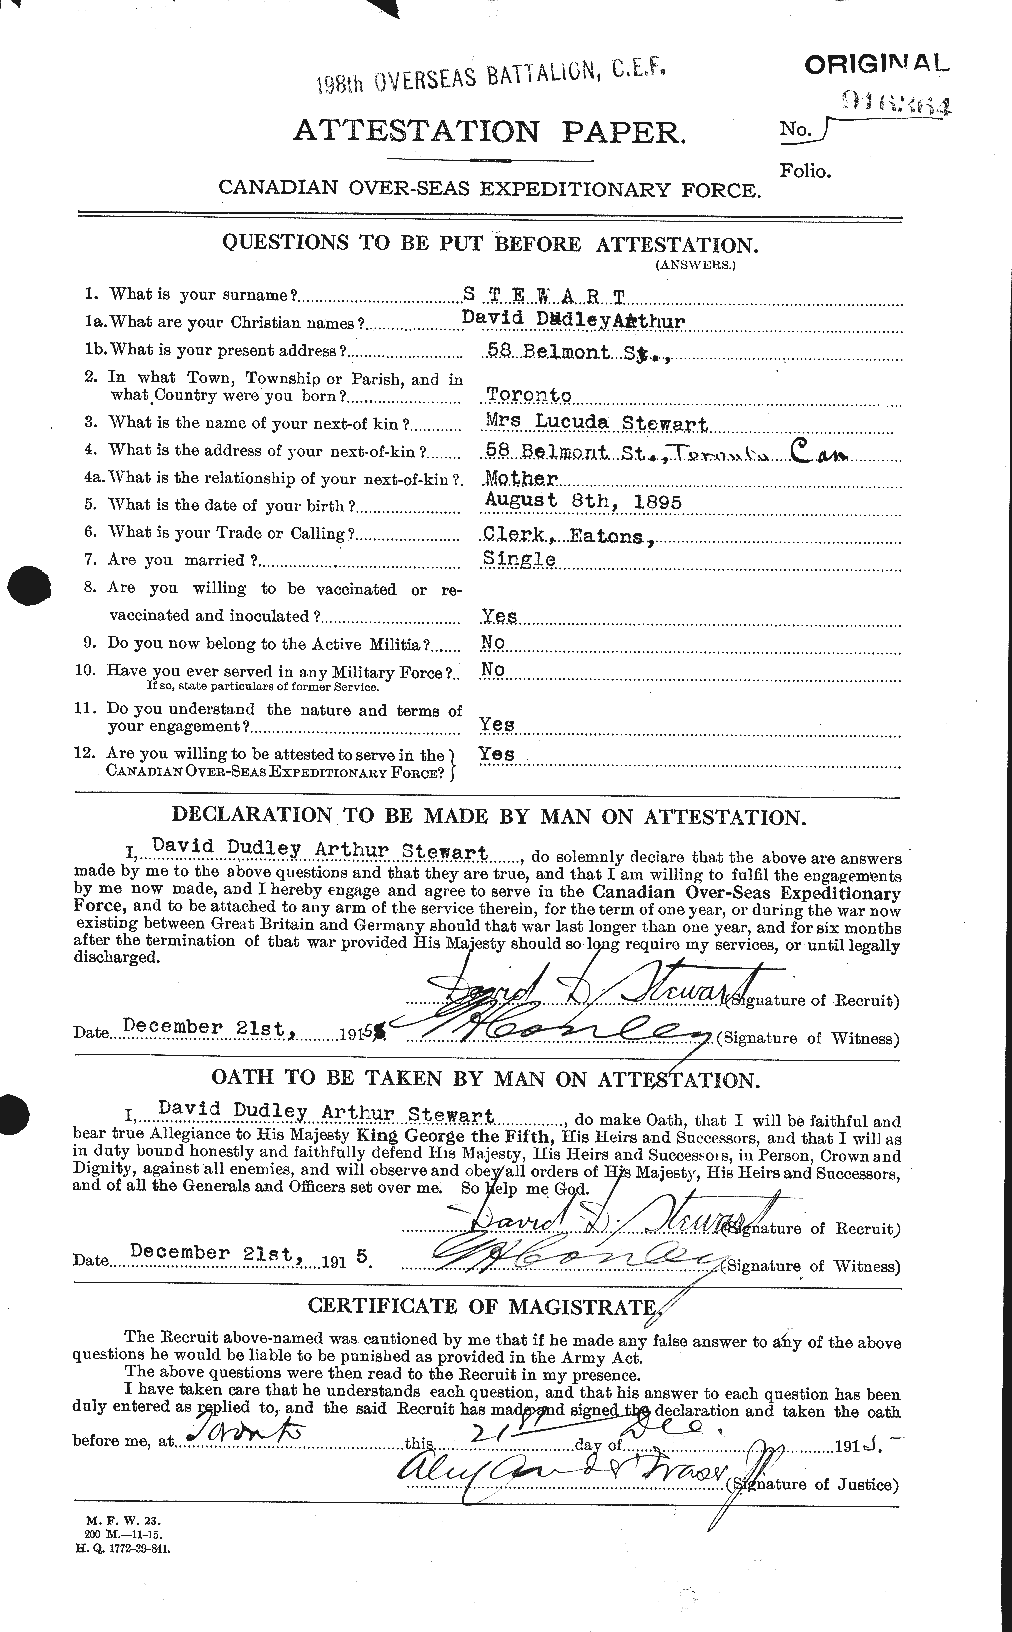 Dossiers du Personnel de la Première Guerre mondiale - CEC 623228a